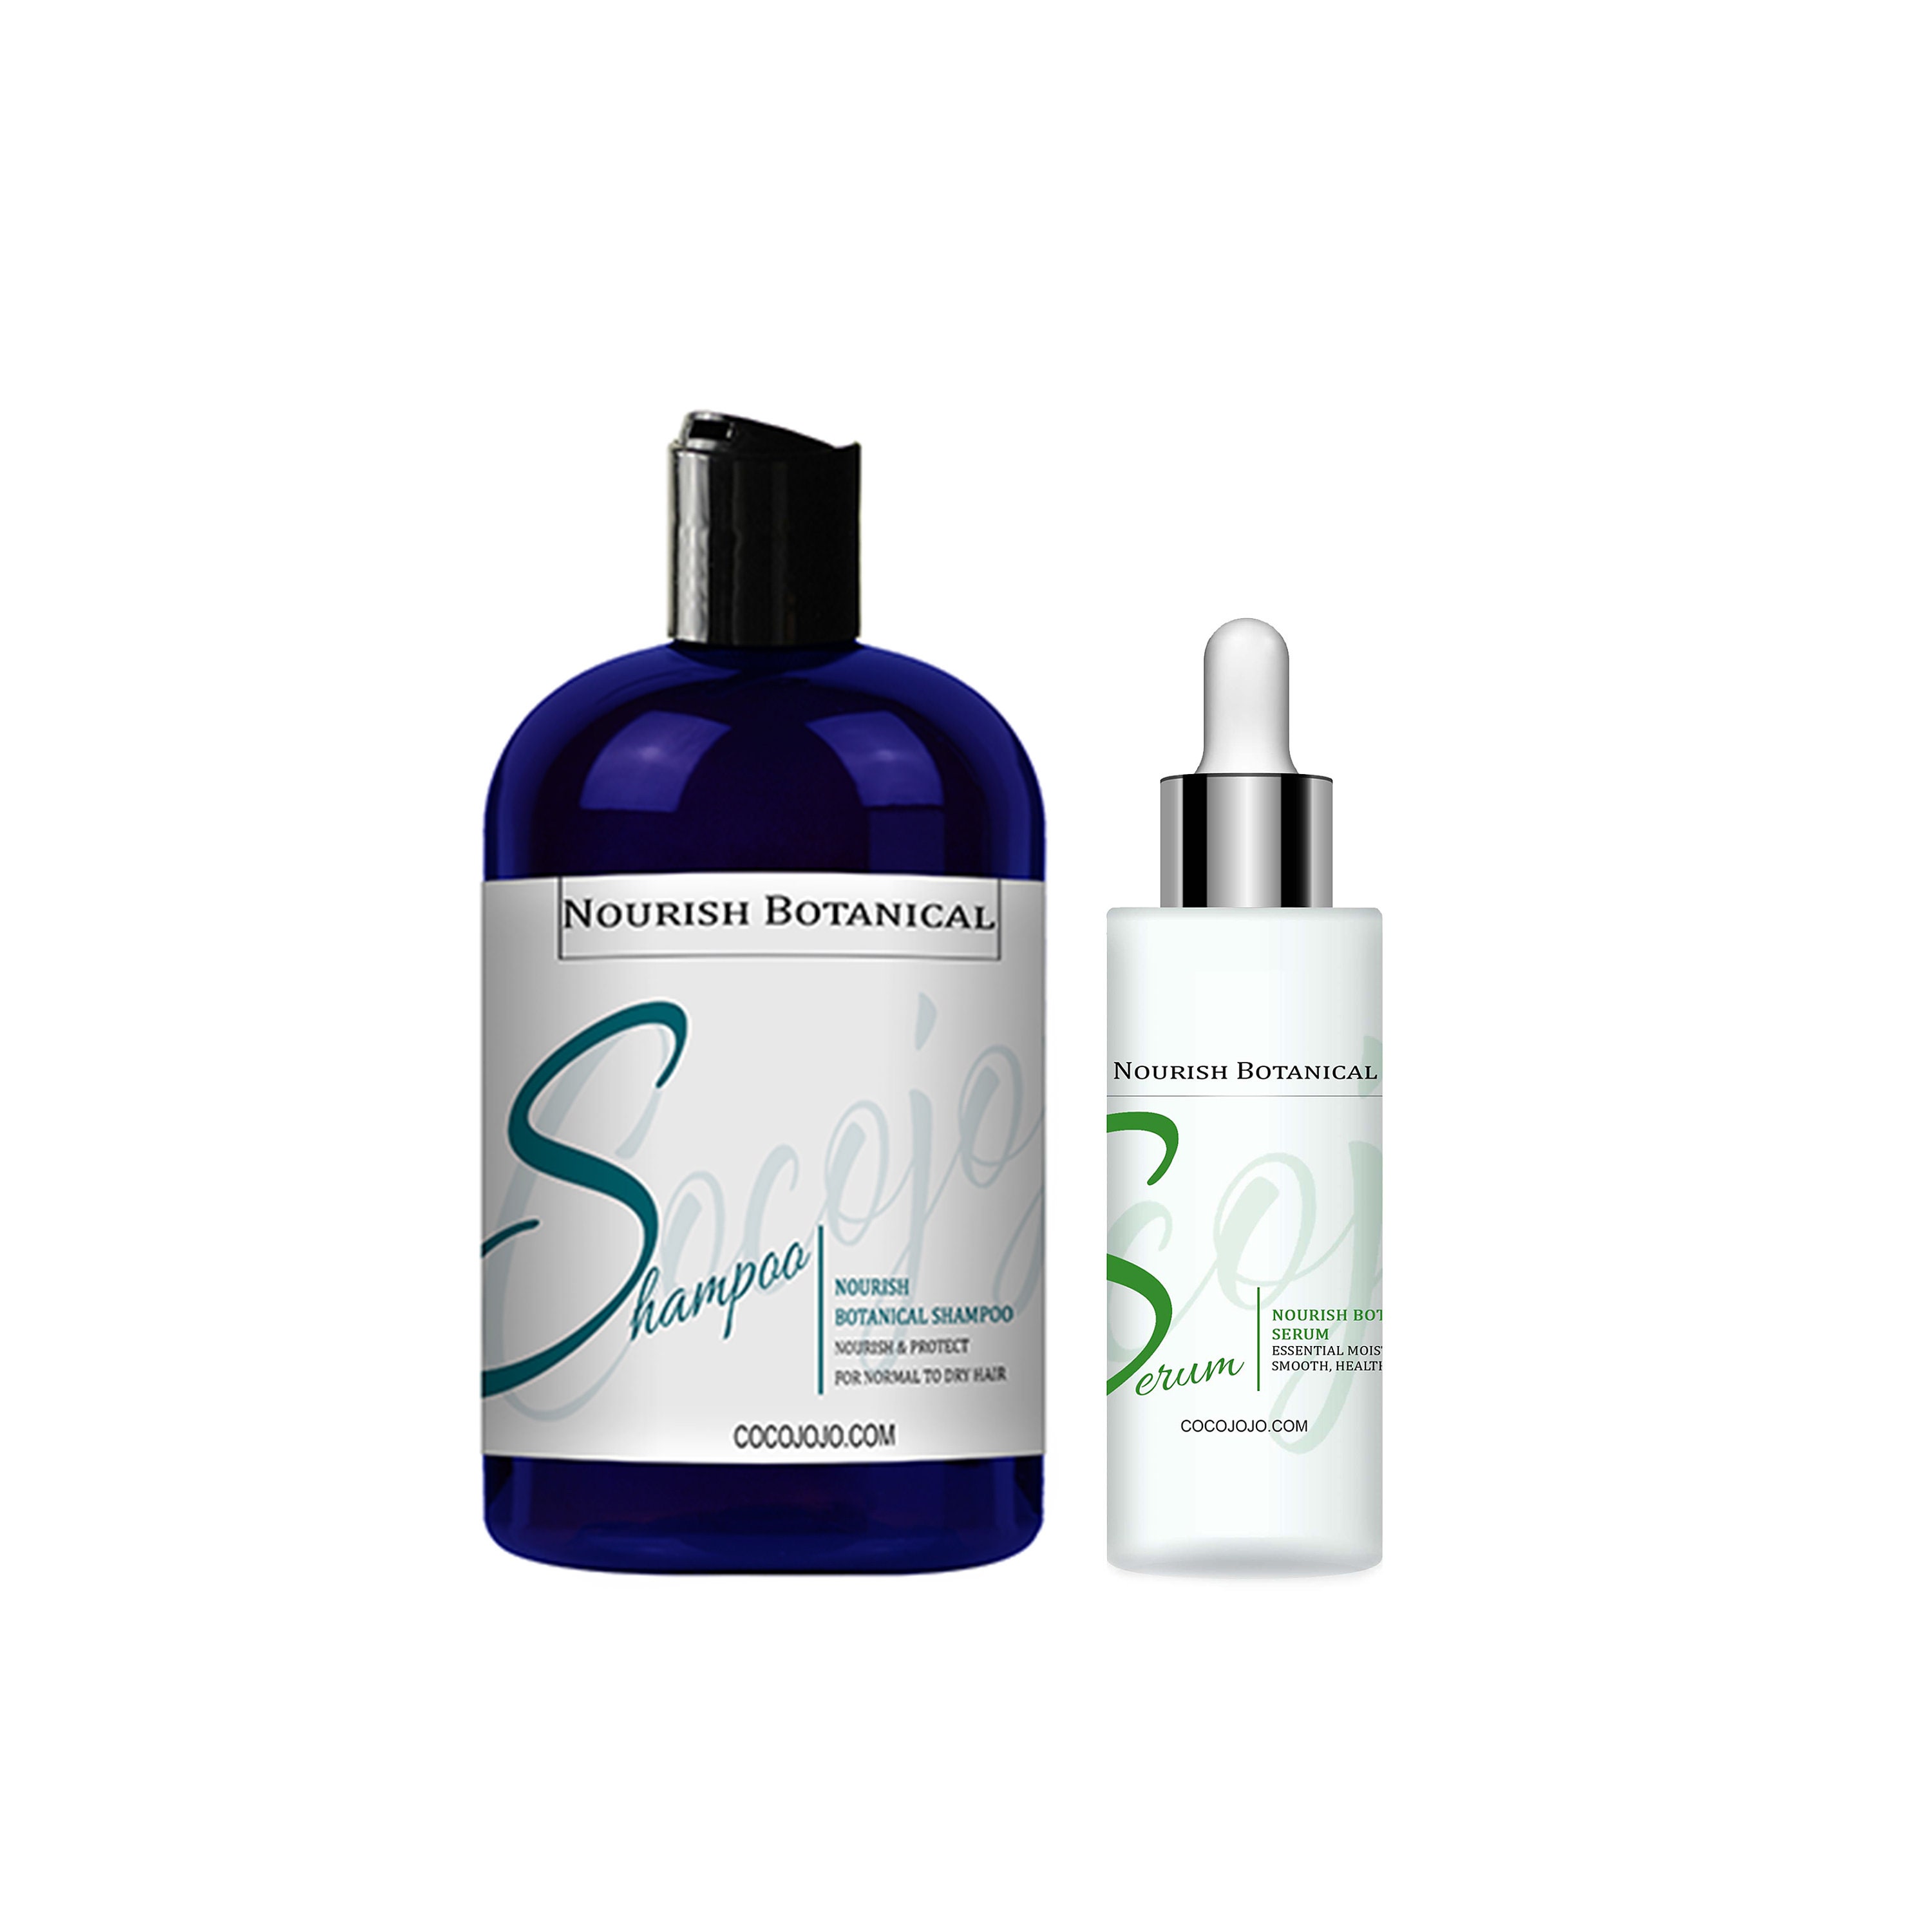 Nourish Botanical Shampoo & Etsy Nourishing Combo Serum - Hydrating